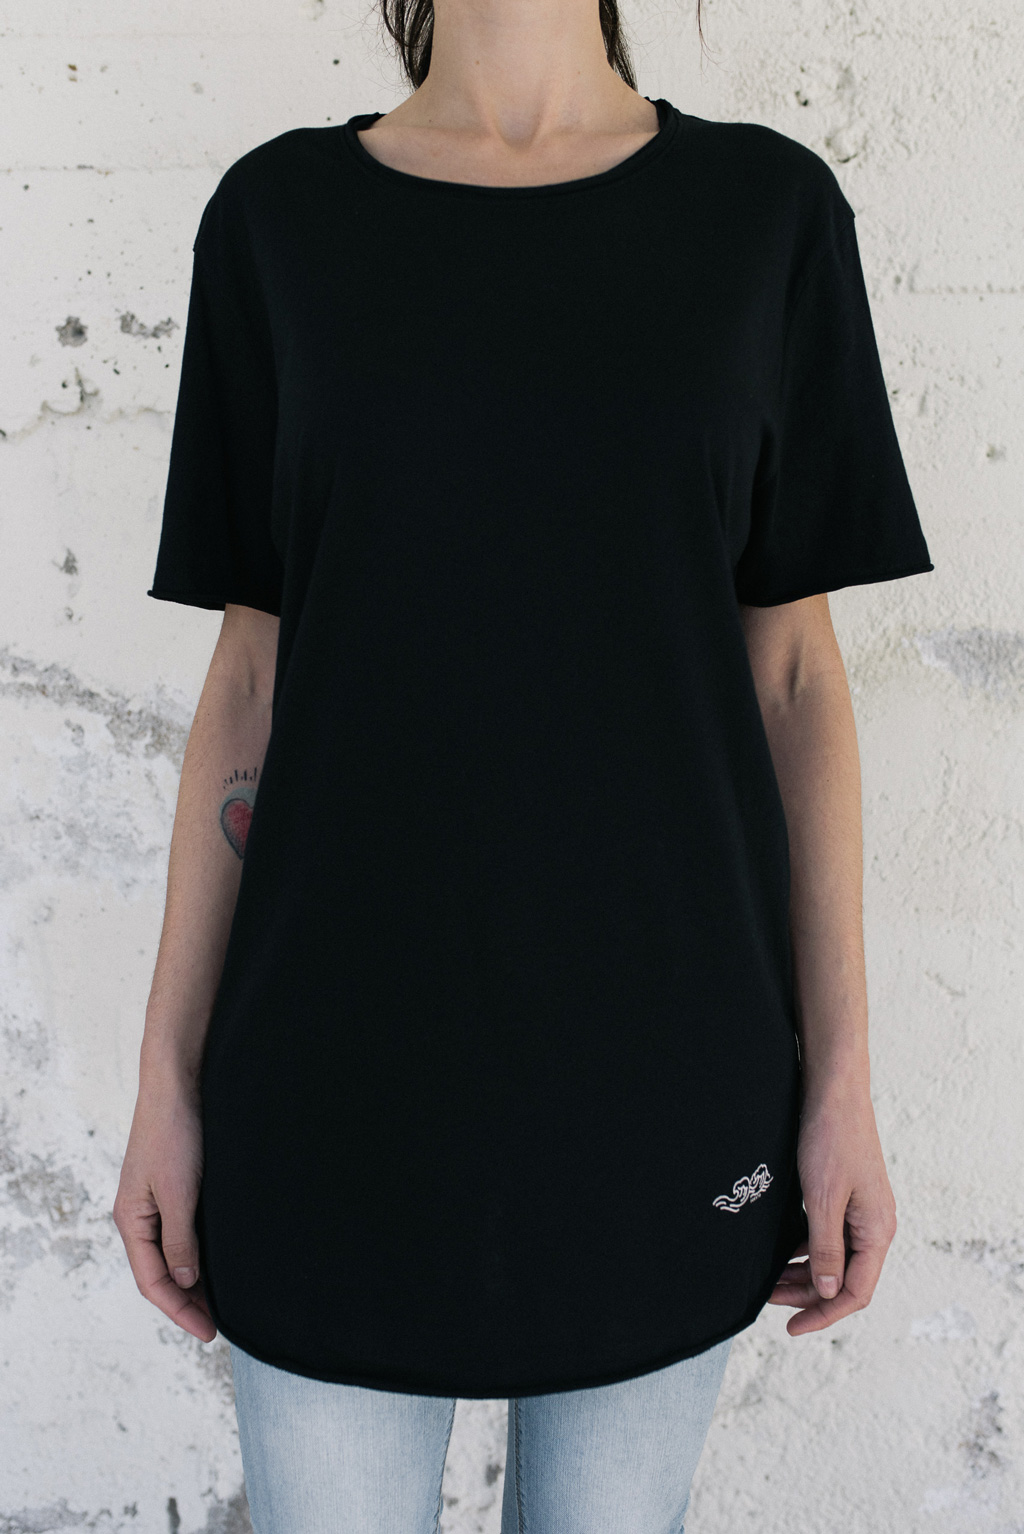 Camiseta negra unisex. Moda orgánica y gallega